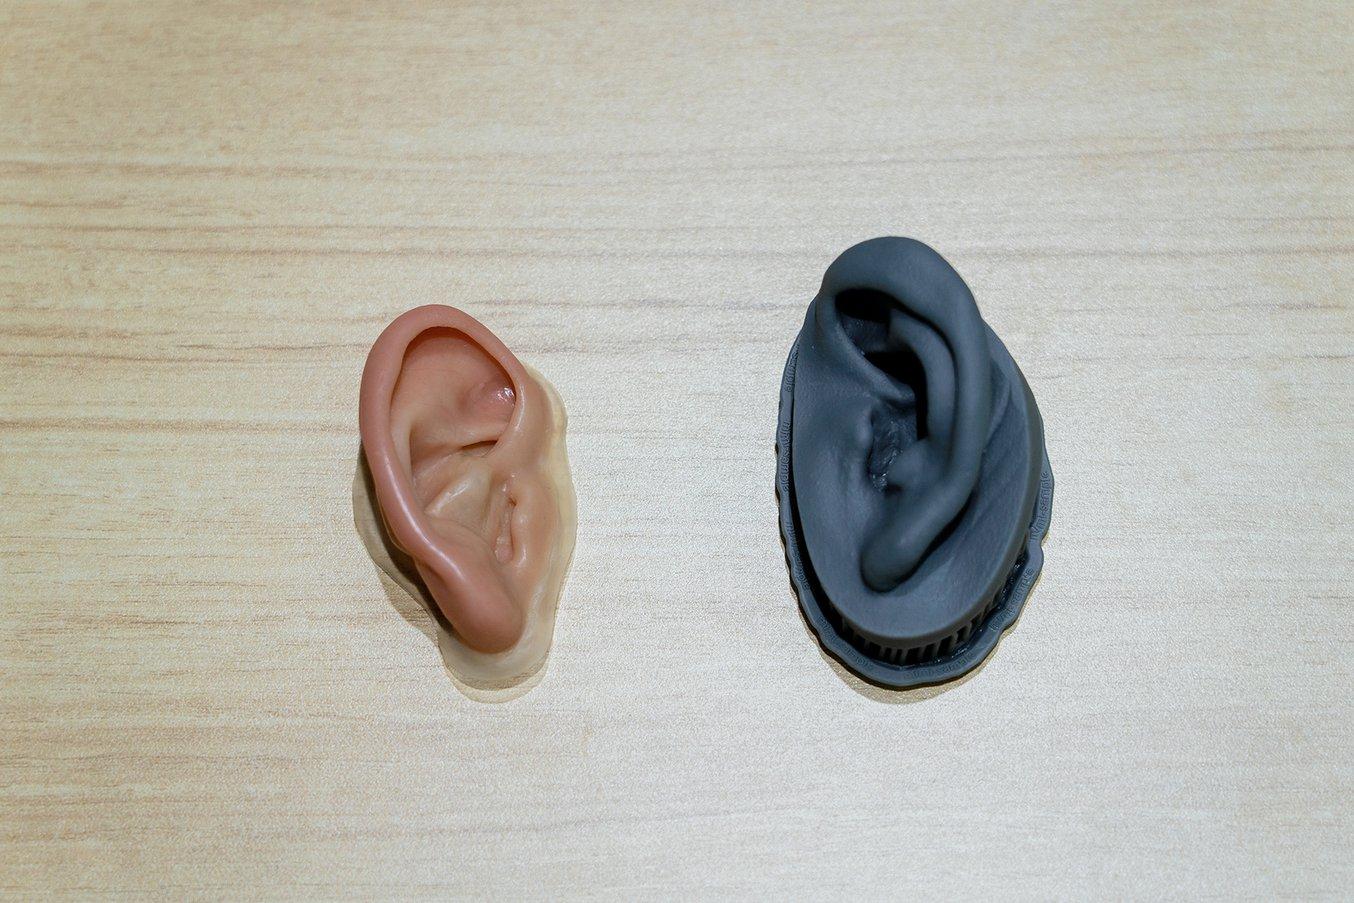 Form 3 で造形したマスター（右）と、シリコンで射出成形したものに着色を施した義耳（左）